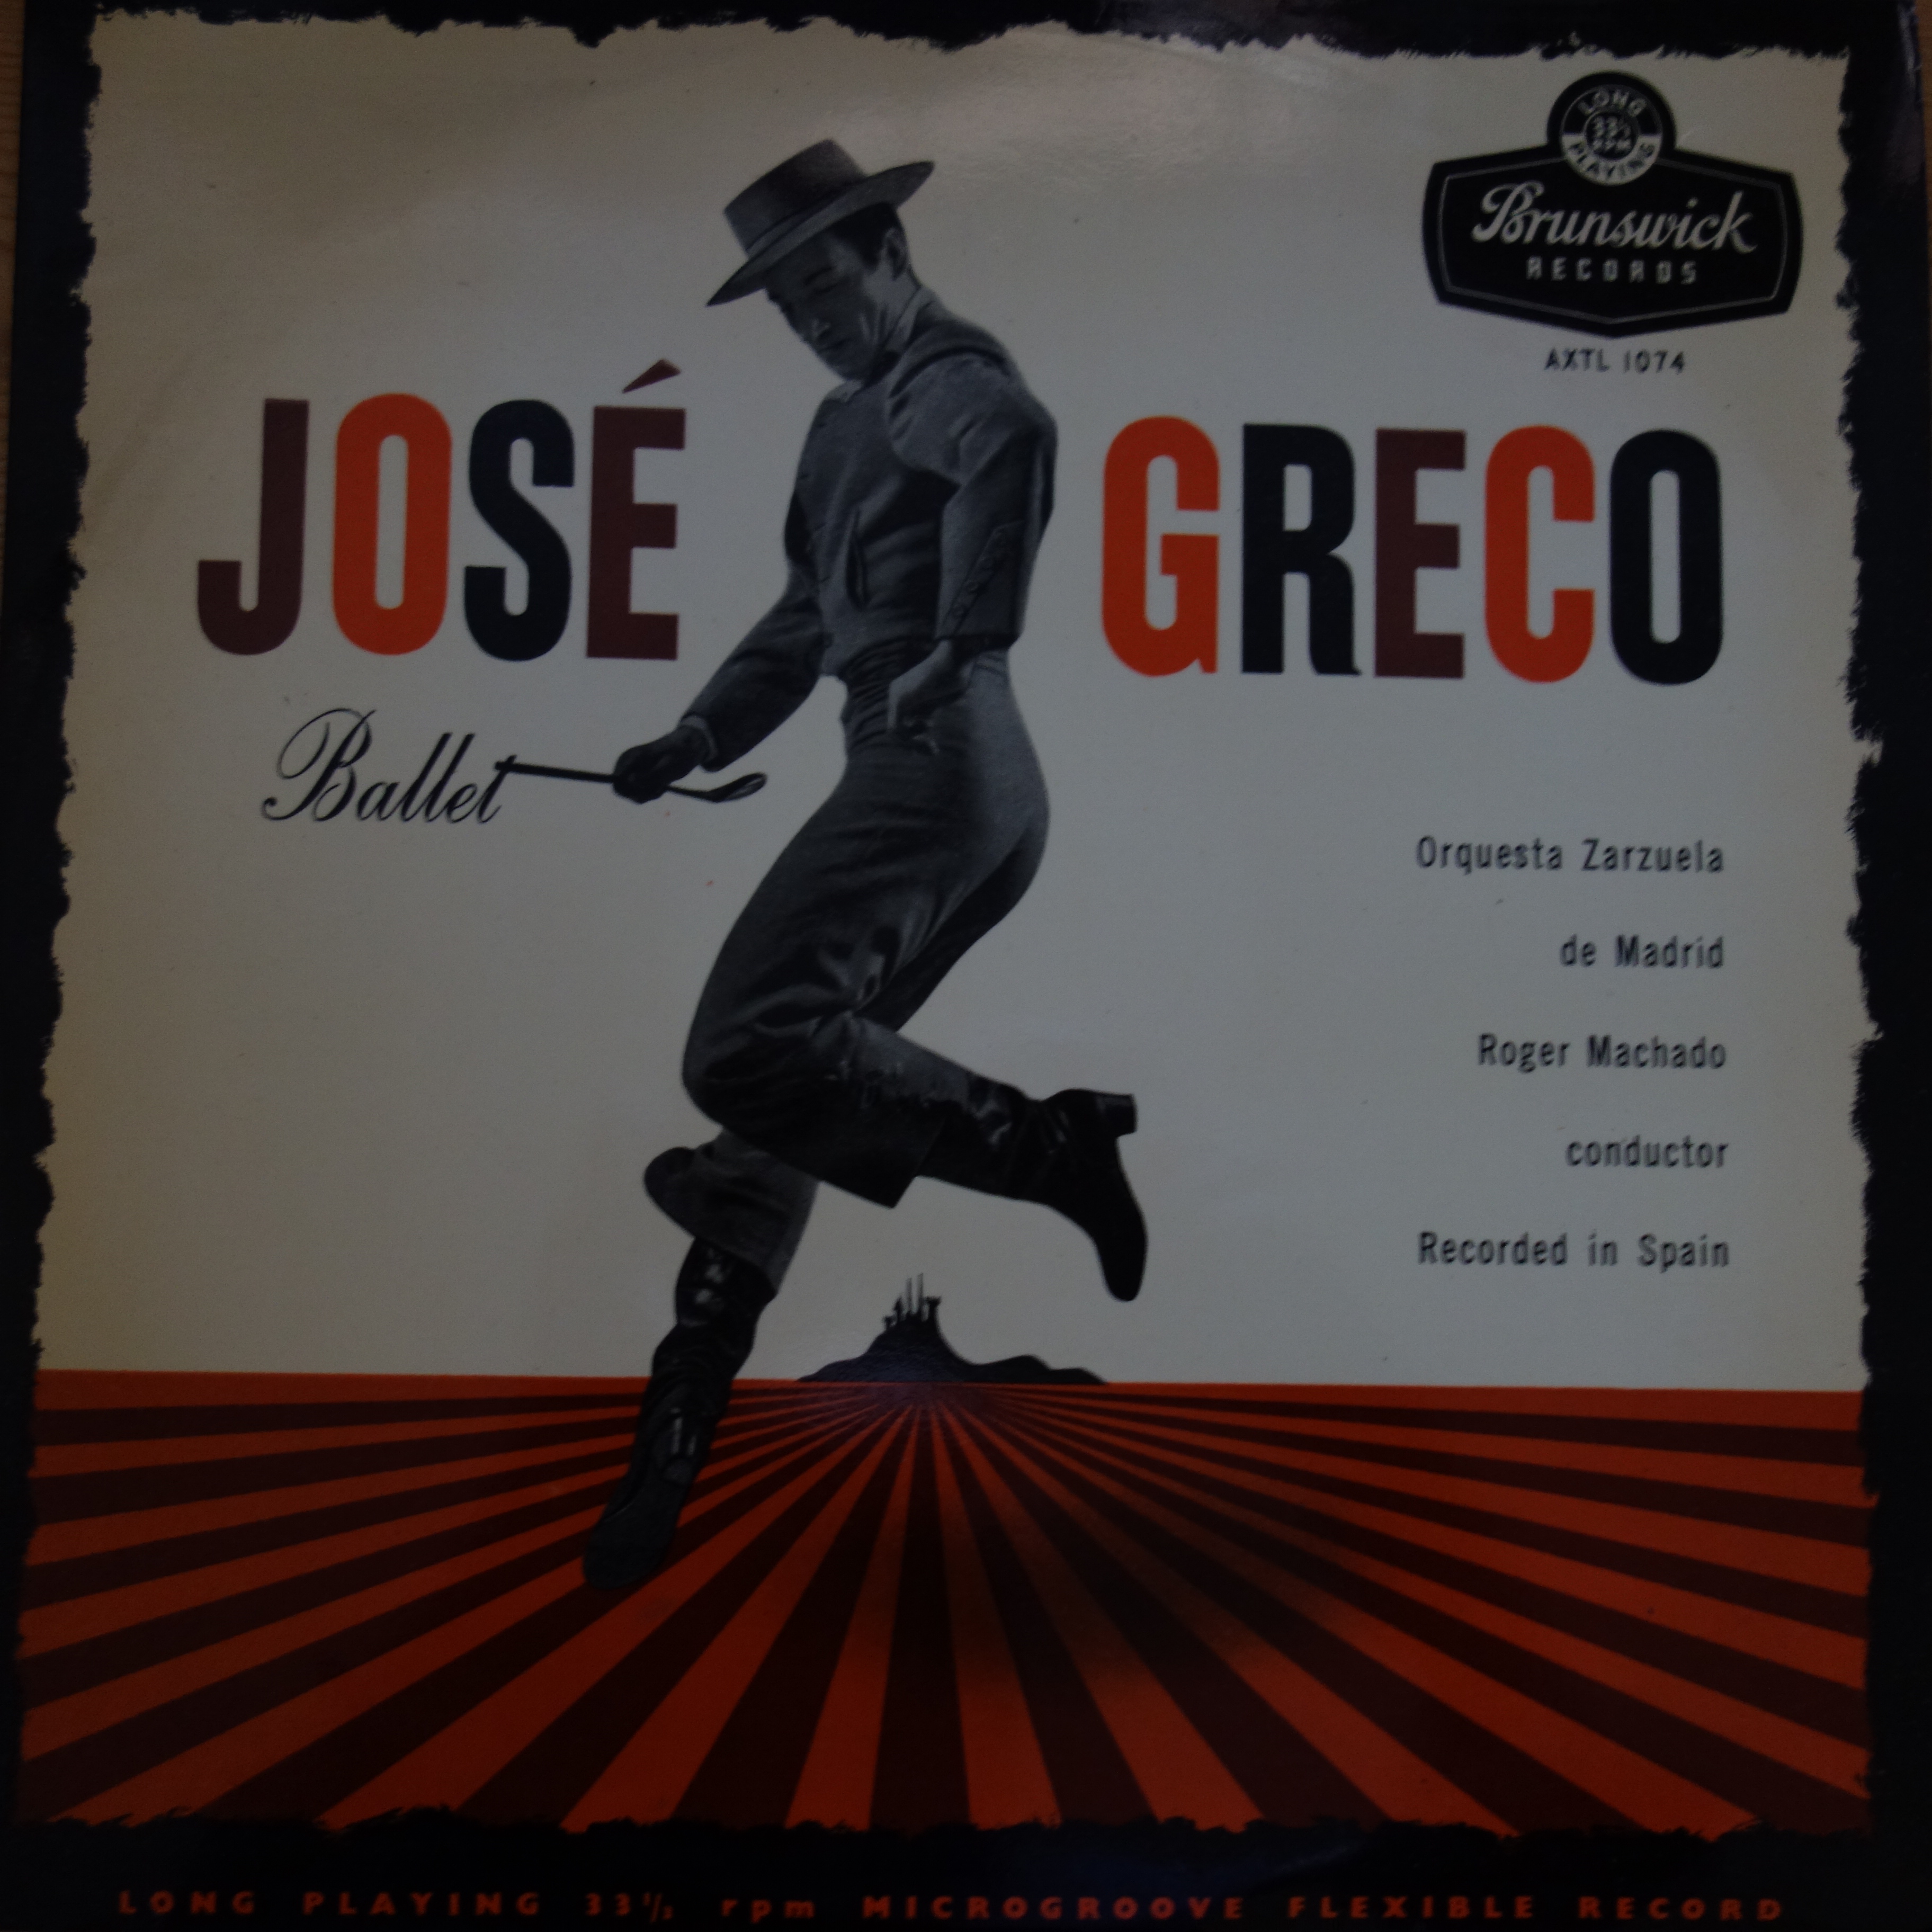 AXTL 1074 Jose Greco Ballet / Roger Machado / Orquesta Zarzuela De Madrid